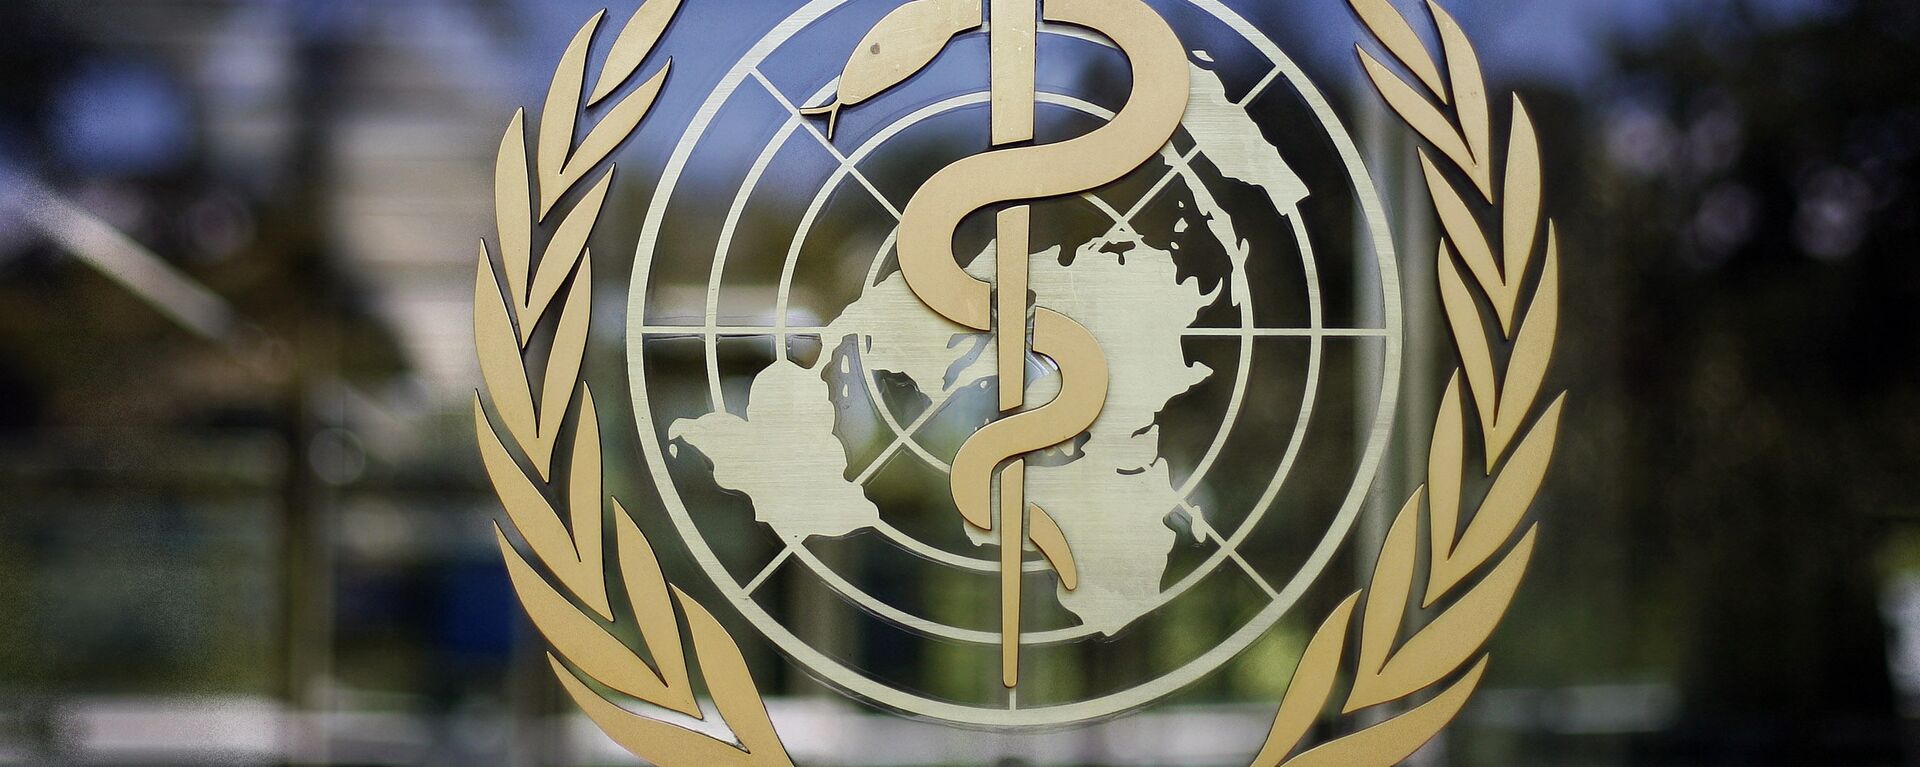 Всемирная Организация Здравоохранения - ВОЗ - Sputnik Грузия, 1920, 29.11.2021